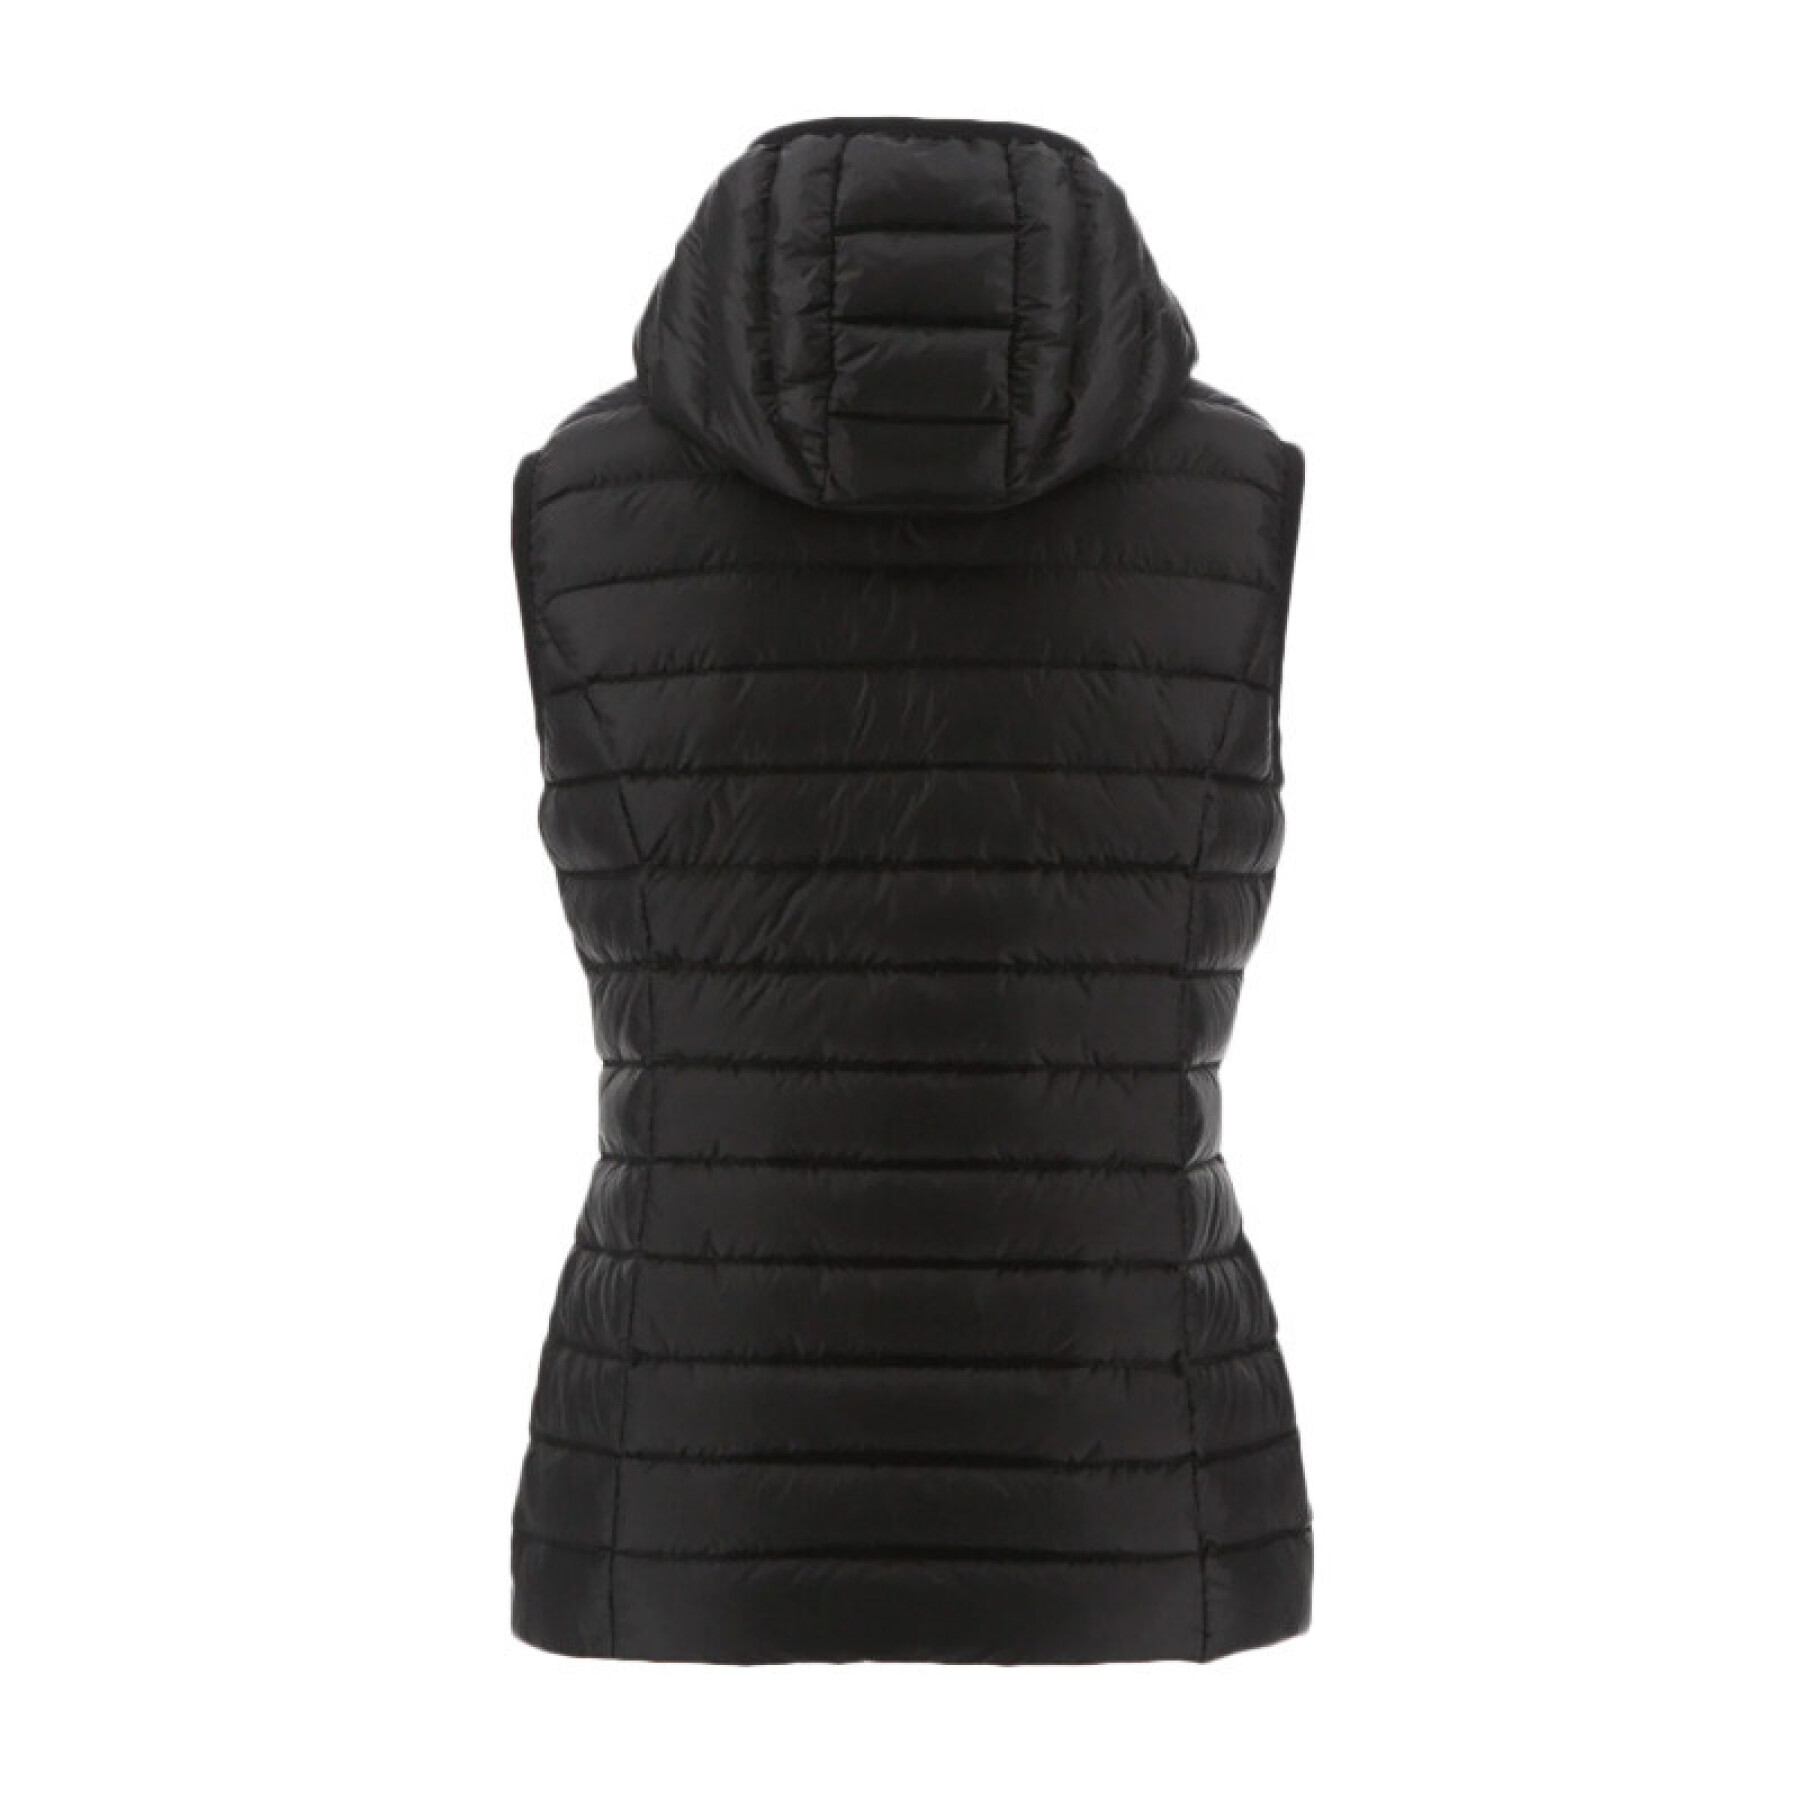 Women's sleeveless hooded down jacket JOTT Mali Noos